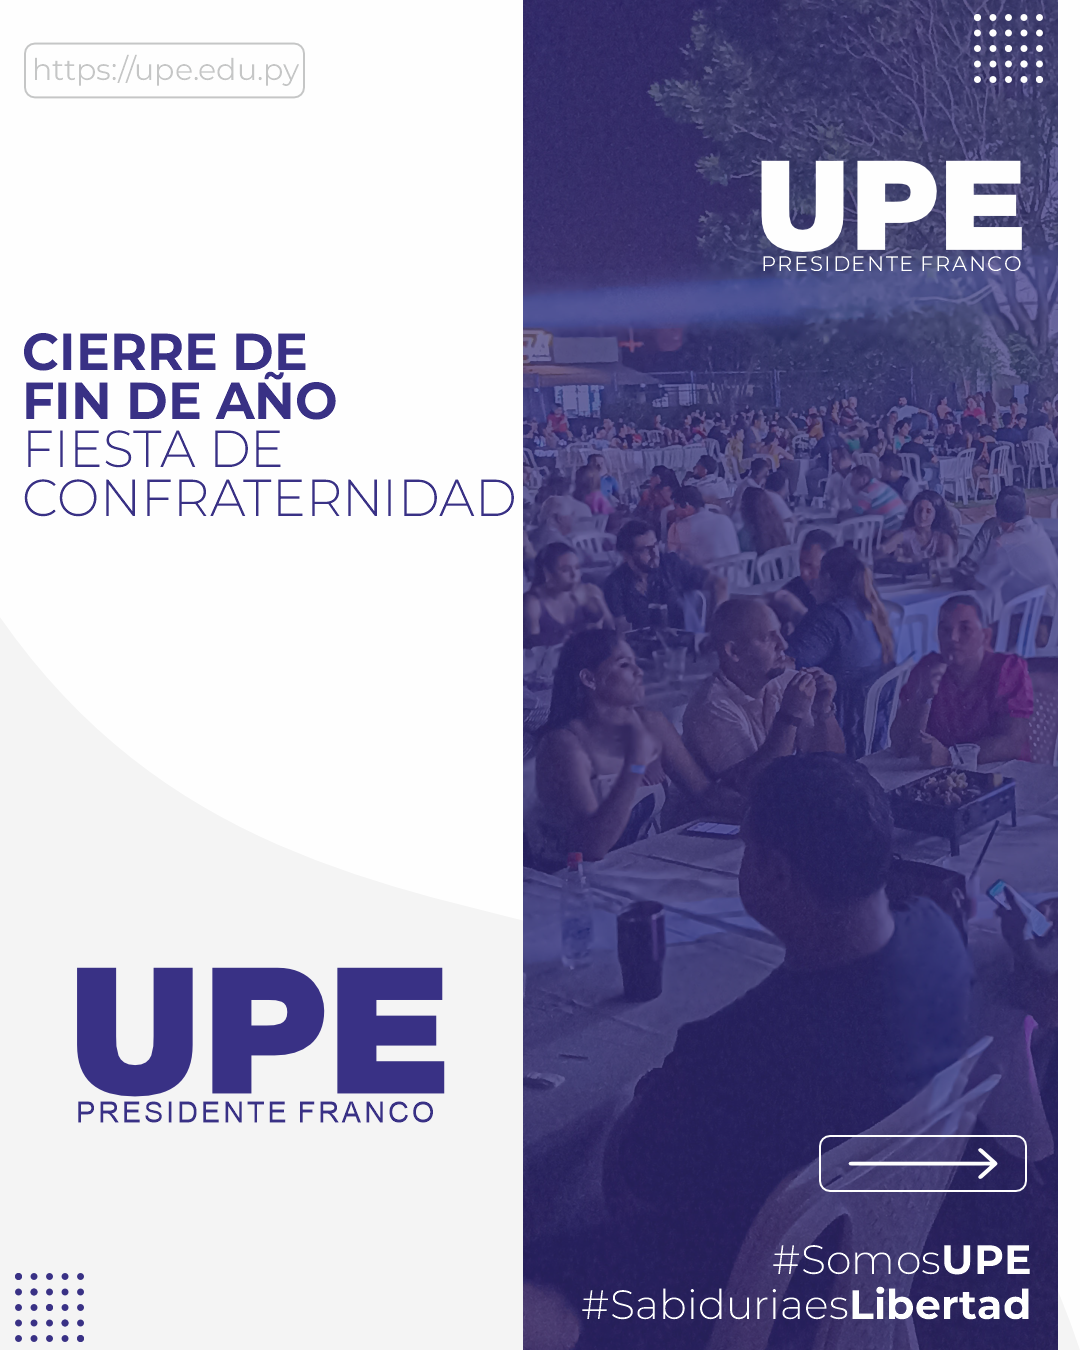 Fiesta de Confraternidad en la UPE: Un Cierre de Año Exitoso y Colaborativo